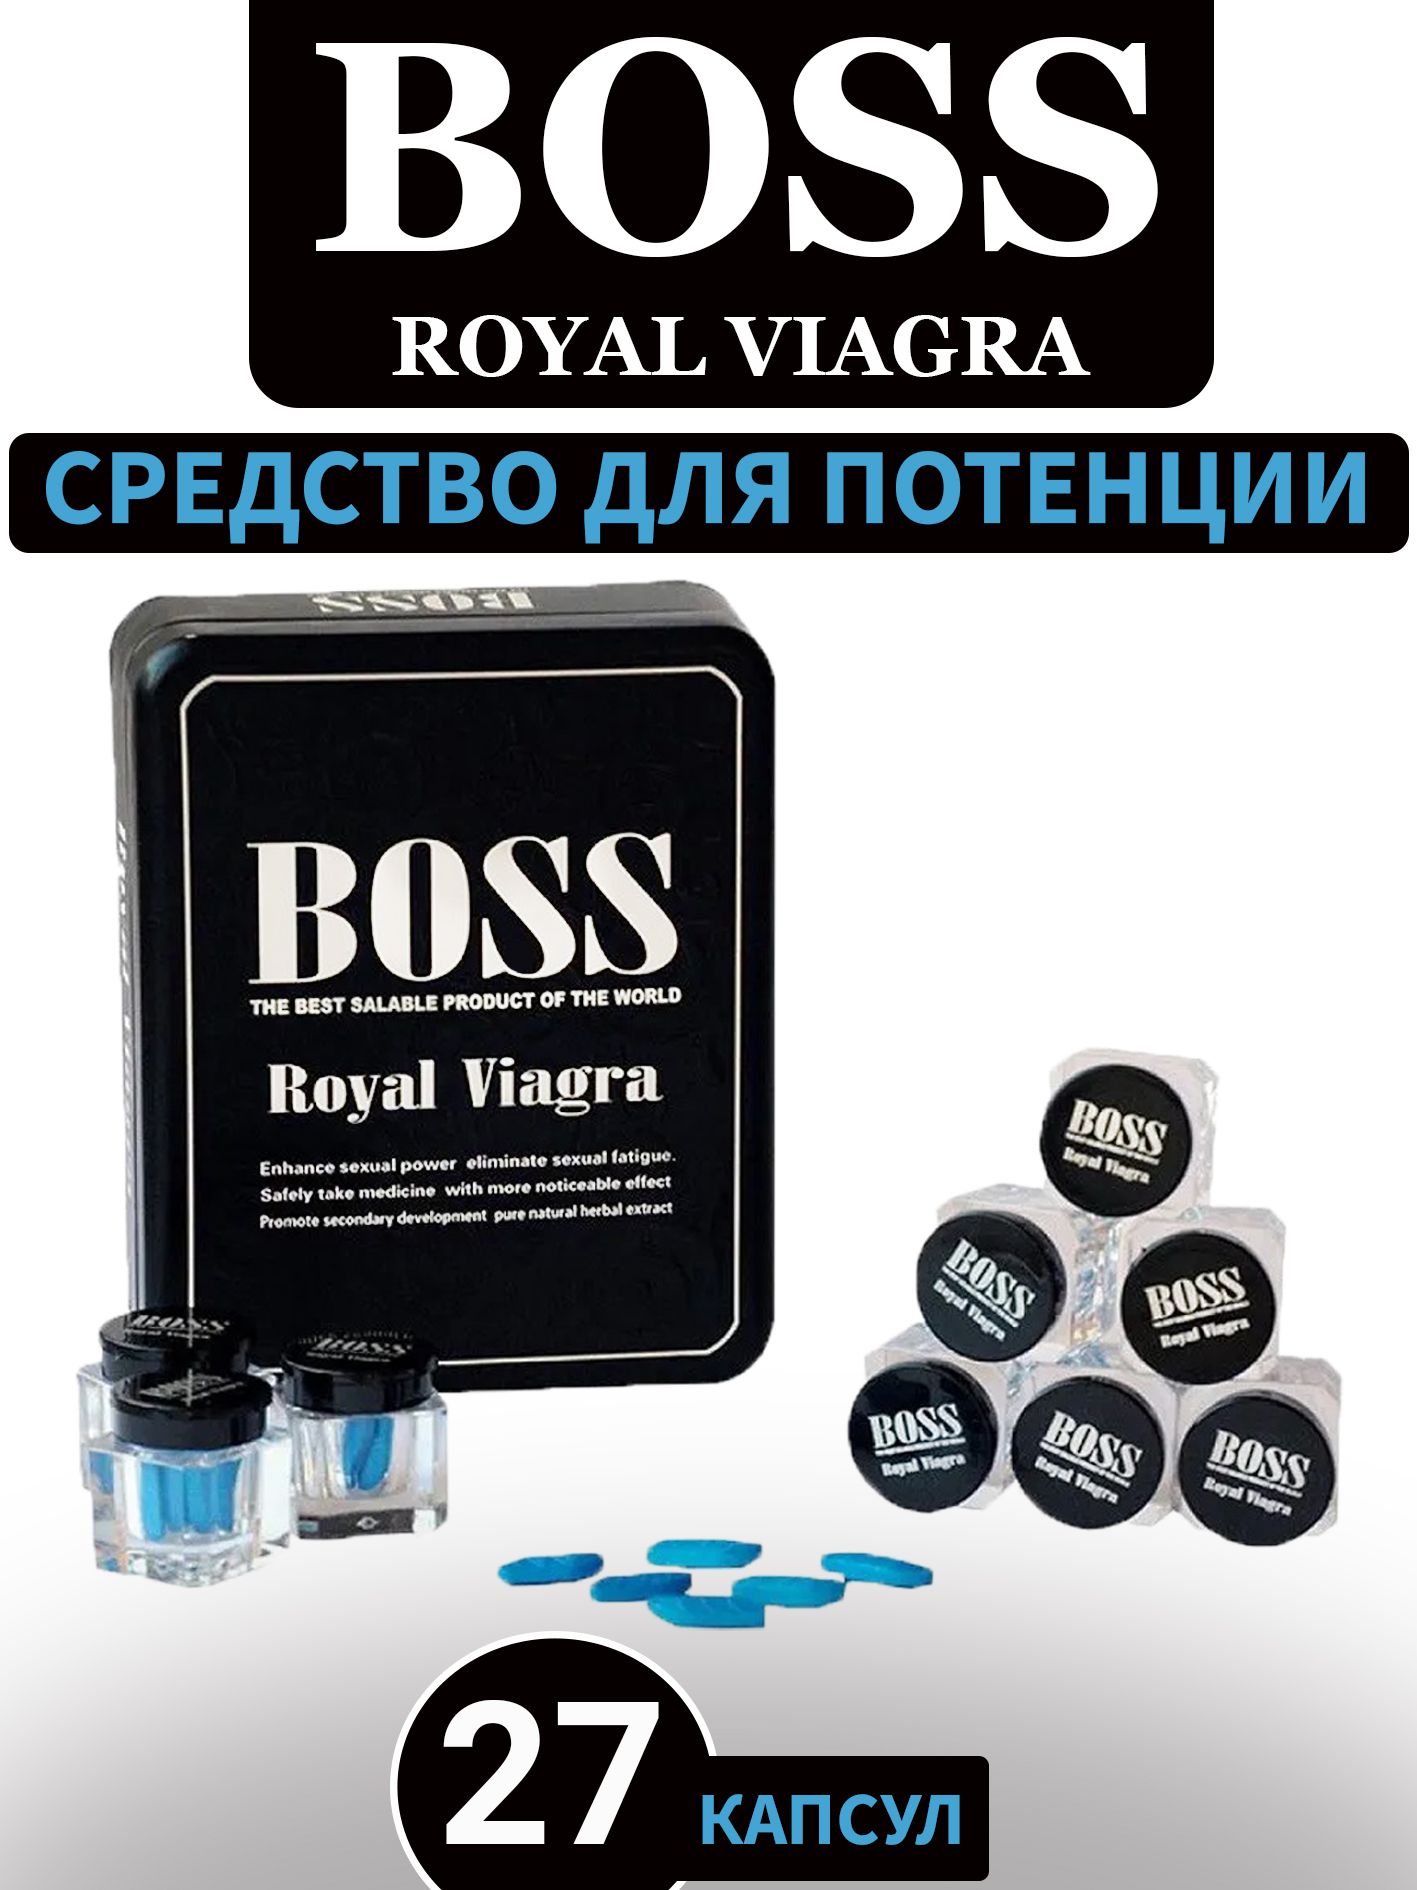 Таблетки босс для мужчин. Препарат Boss Royal viagra. Мужской возбудитель Boss Royal viagra. Босс Роял виагра 27 капсул. БАДЫ для мужчин босс Роял виагра.